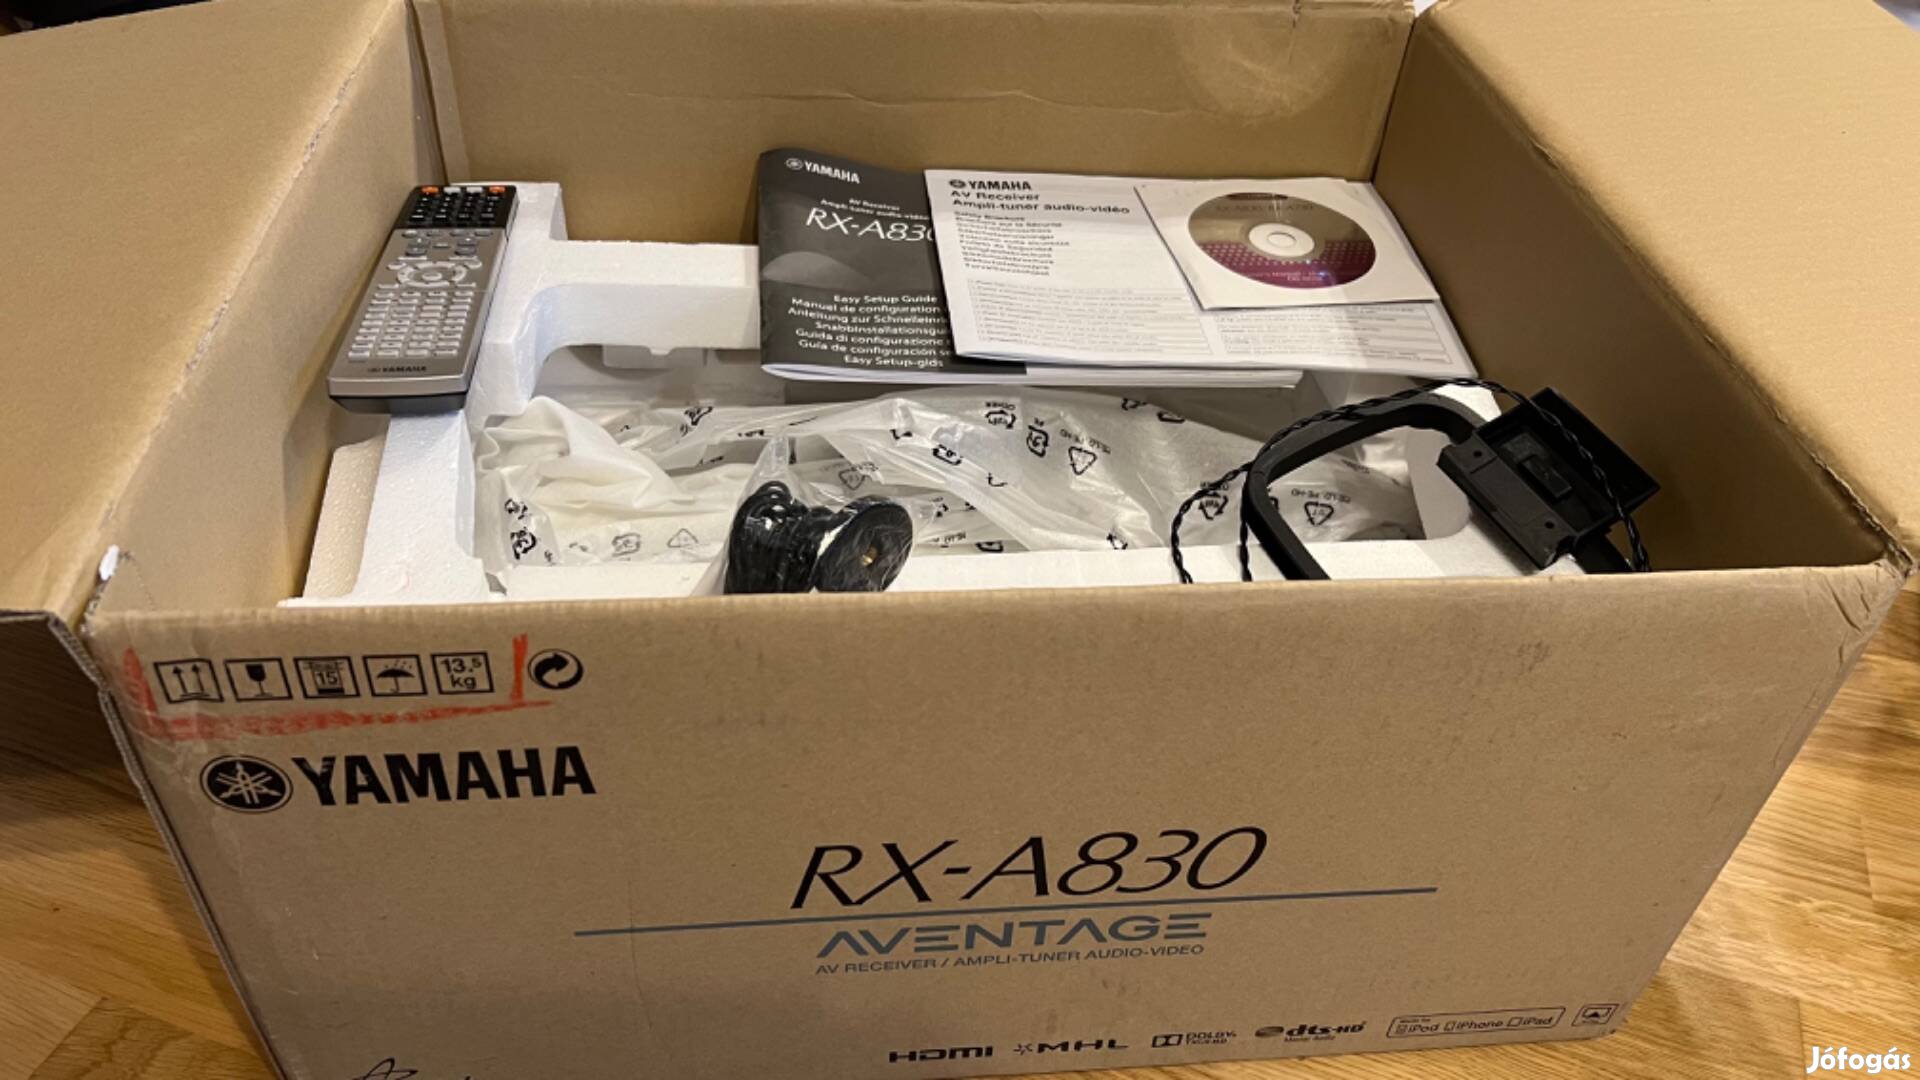 Yamaha RX-A830 házi mozi erősítő, újszerű, dobozában